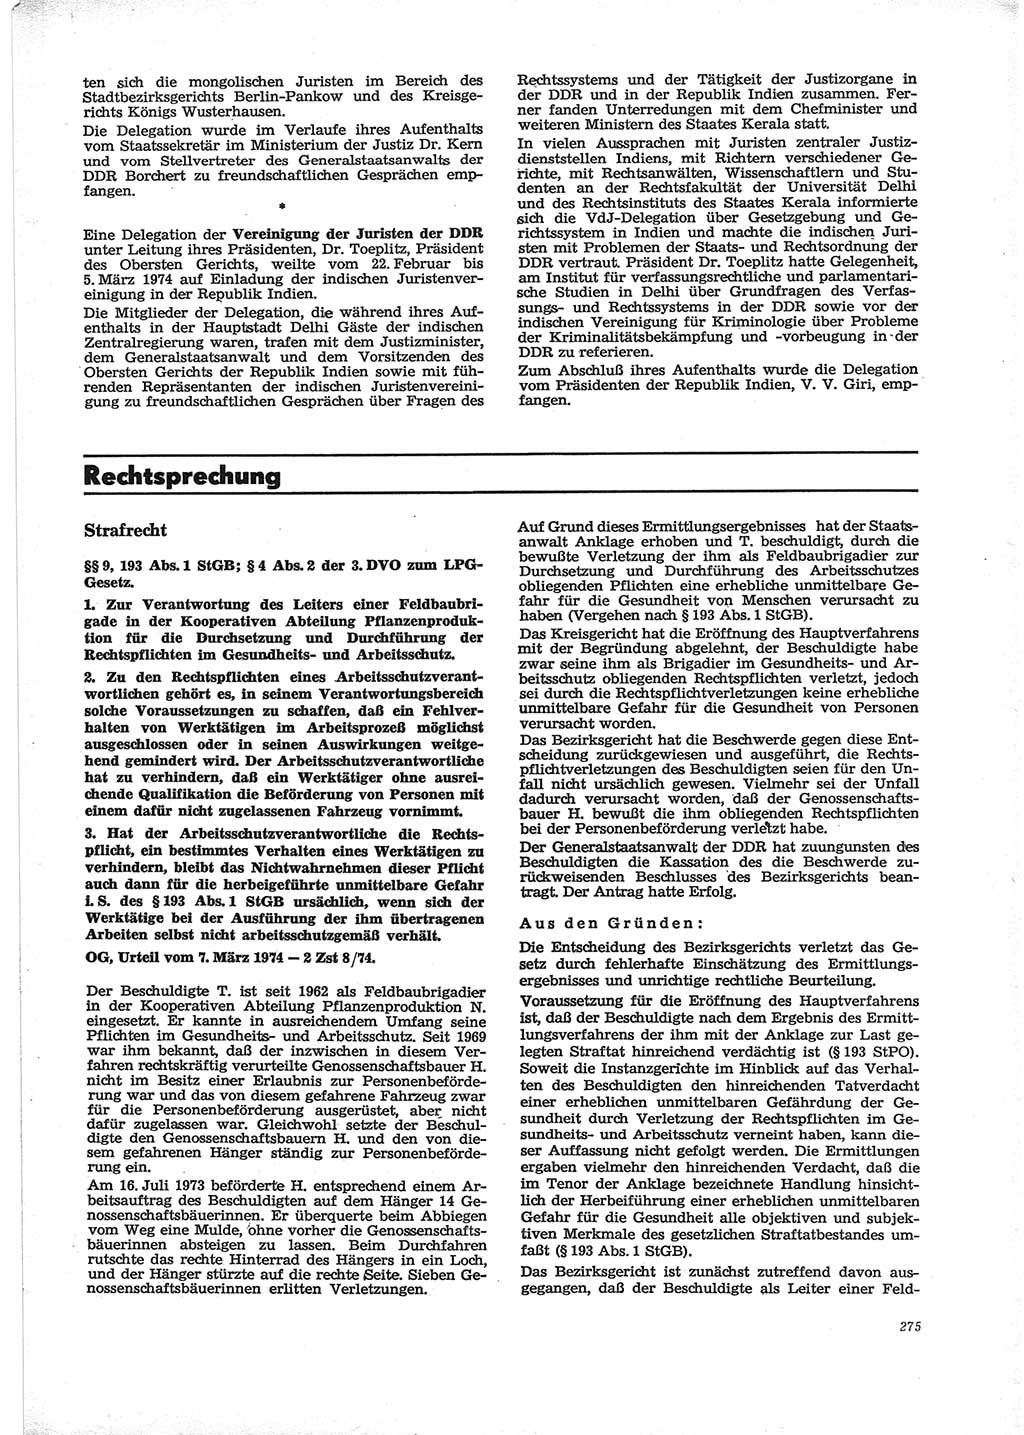 Neue Justiz (NJ), Zeitschrift für Recht und Rechtswissenschaft [Deutsche Demokratische Republik (DDR)], 28. Jahrgang 1974, Seite 275 (NJ DDR 1974, S. 275)